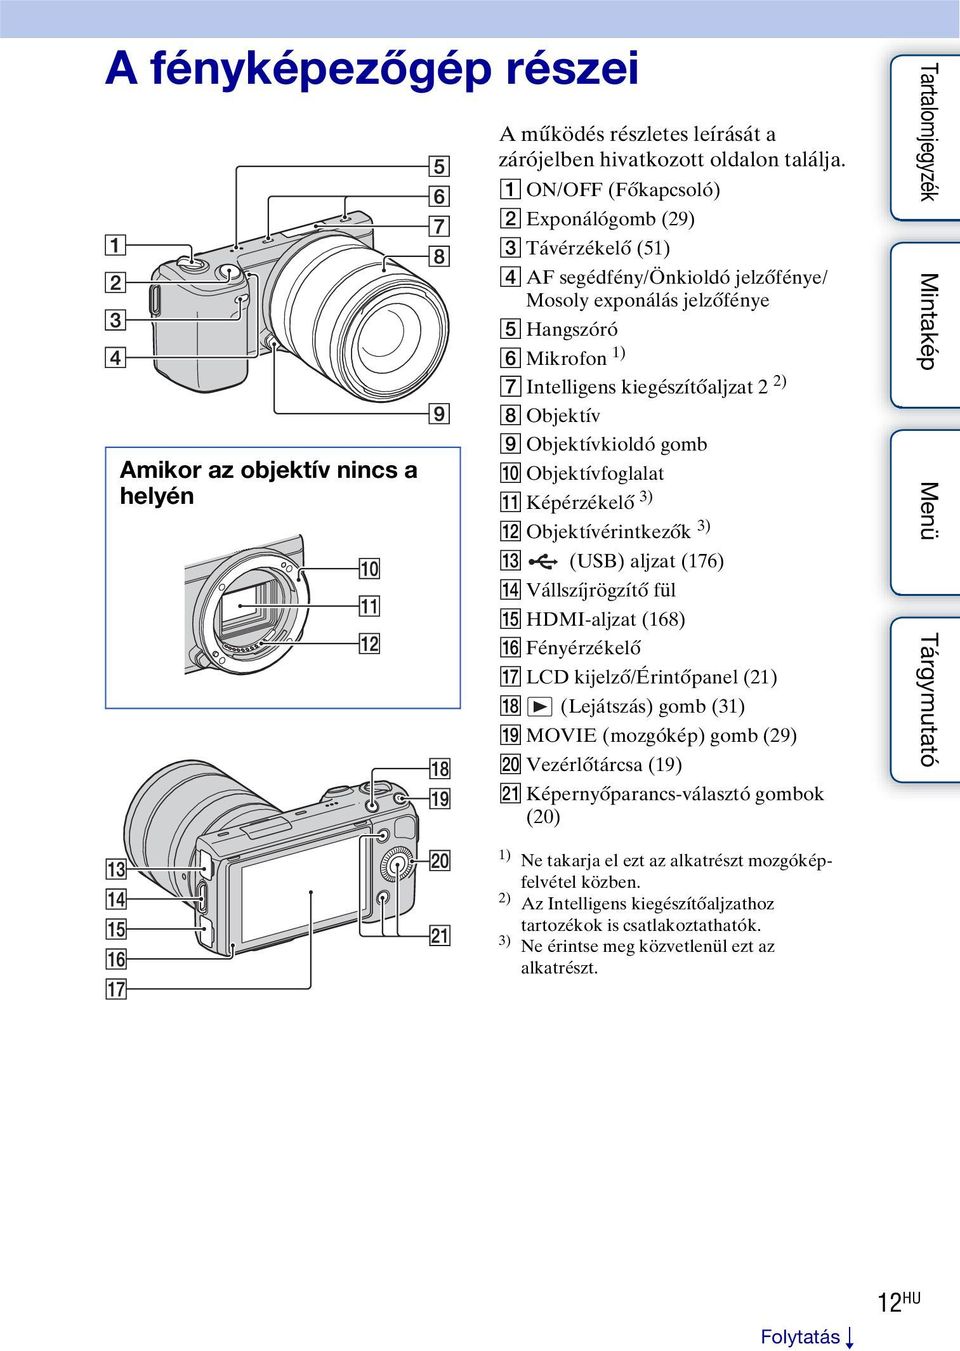 Objektívkioldó gomb J Objektívfoglalat K Képérzékelő 3) L Objektívérintkezők 3) M (USB) aljzat (176) N Vállszíjrögzítő fül O HDMI-aljzat (168) P Fényérzékelő Q LCD kijelző/érintőpanel (21) R